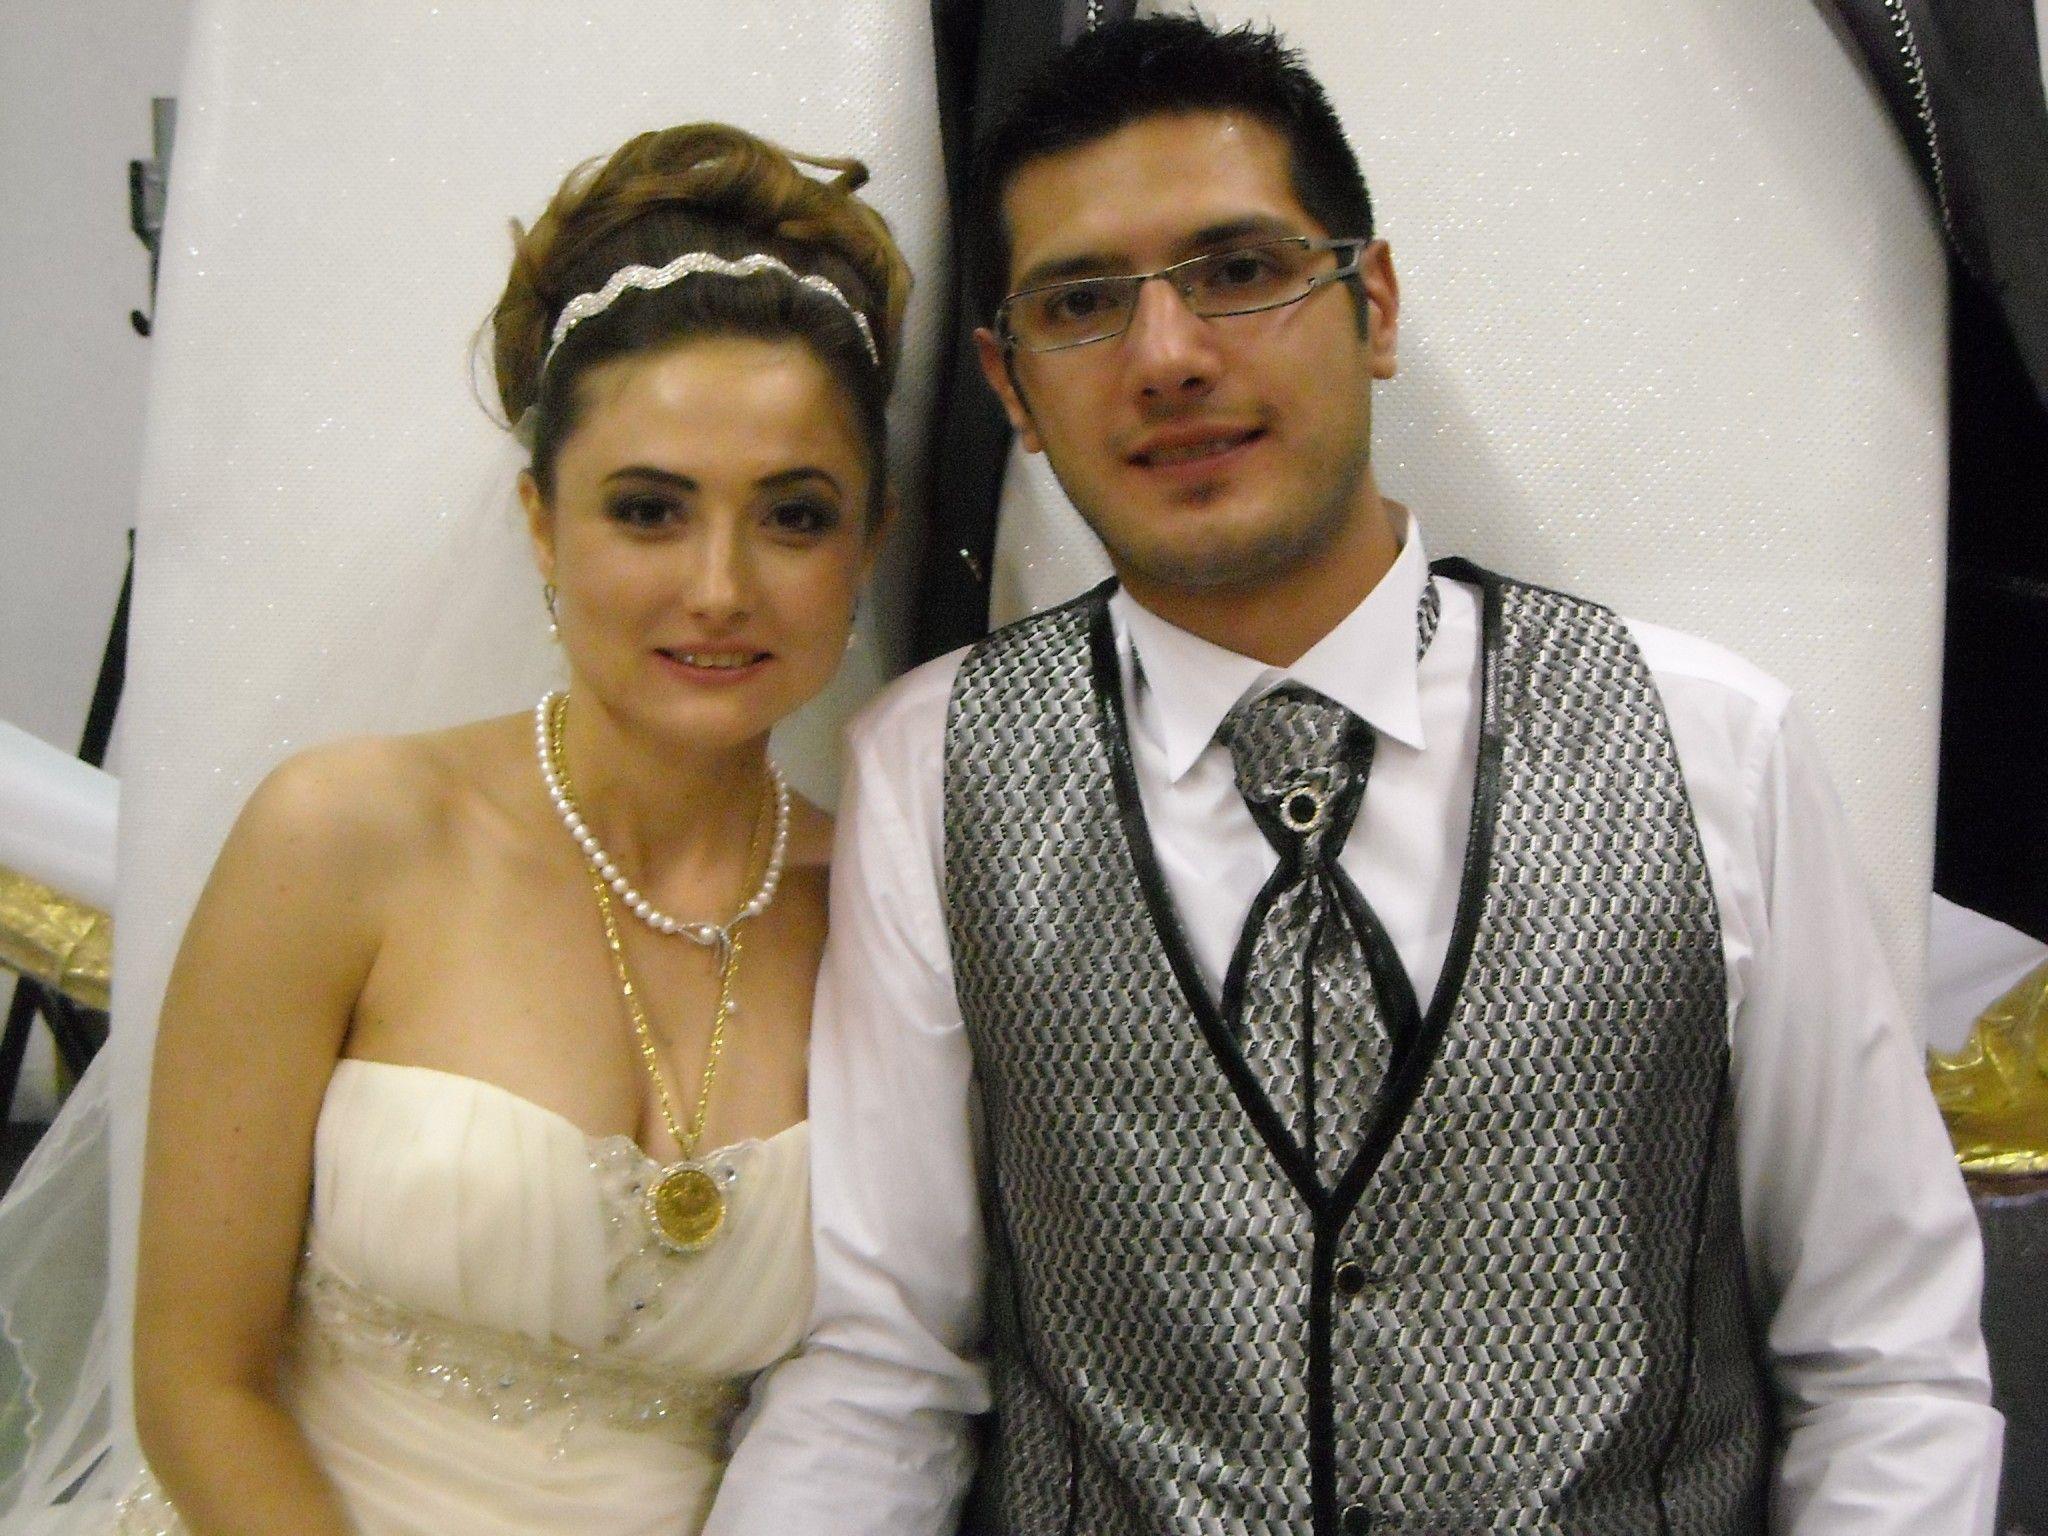 Das glückliche Paar während des Hochzeitsfestes in der Messehalle.